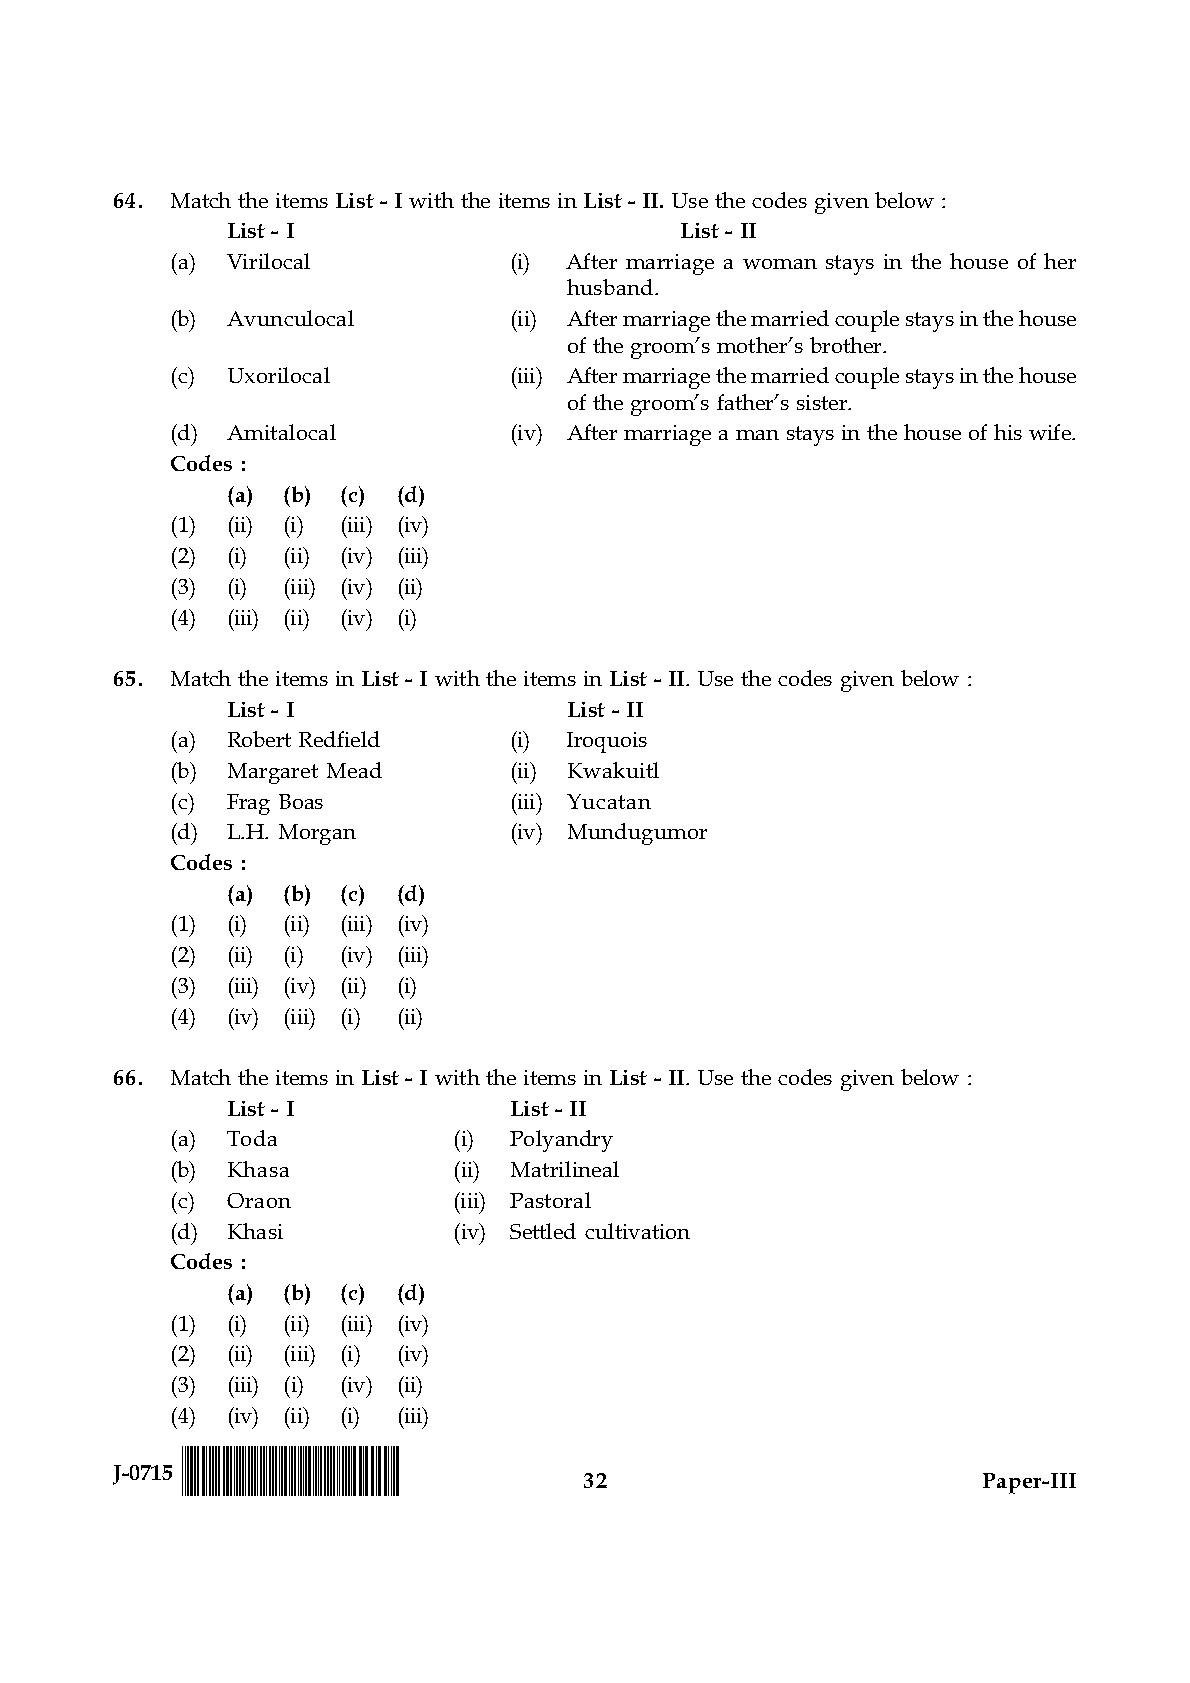 UGC NET Anthropology Question Paper III June 2015 32